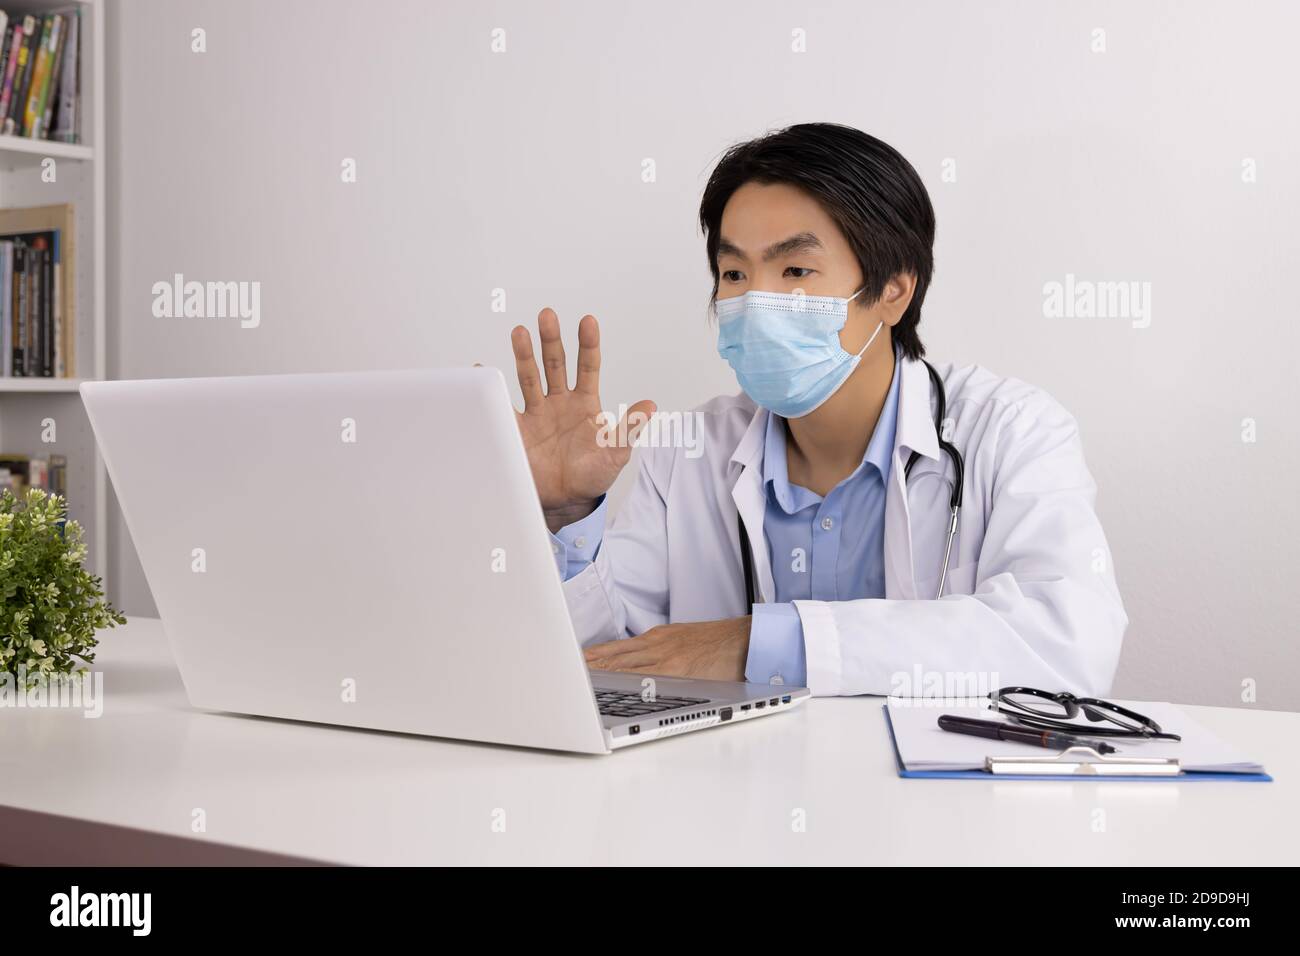 Junge asiatische Arzt Mann im Labor Mantel oder Kleid mit Stethoskop tragen Gesichtsmaske Video Chat oder Videokonferenz und Gespräch mit dem Patienten über einen Laptop Stockfoto